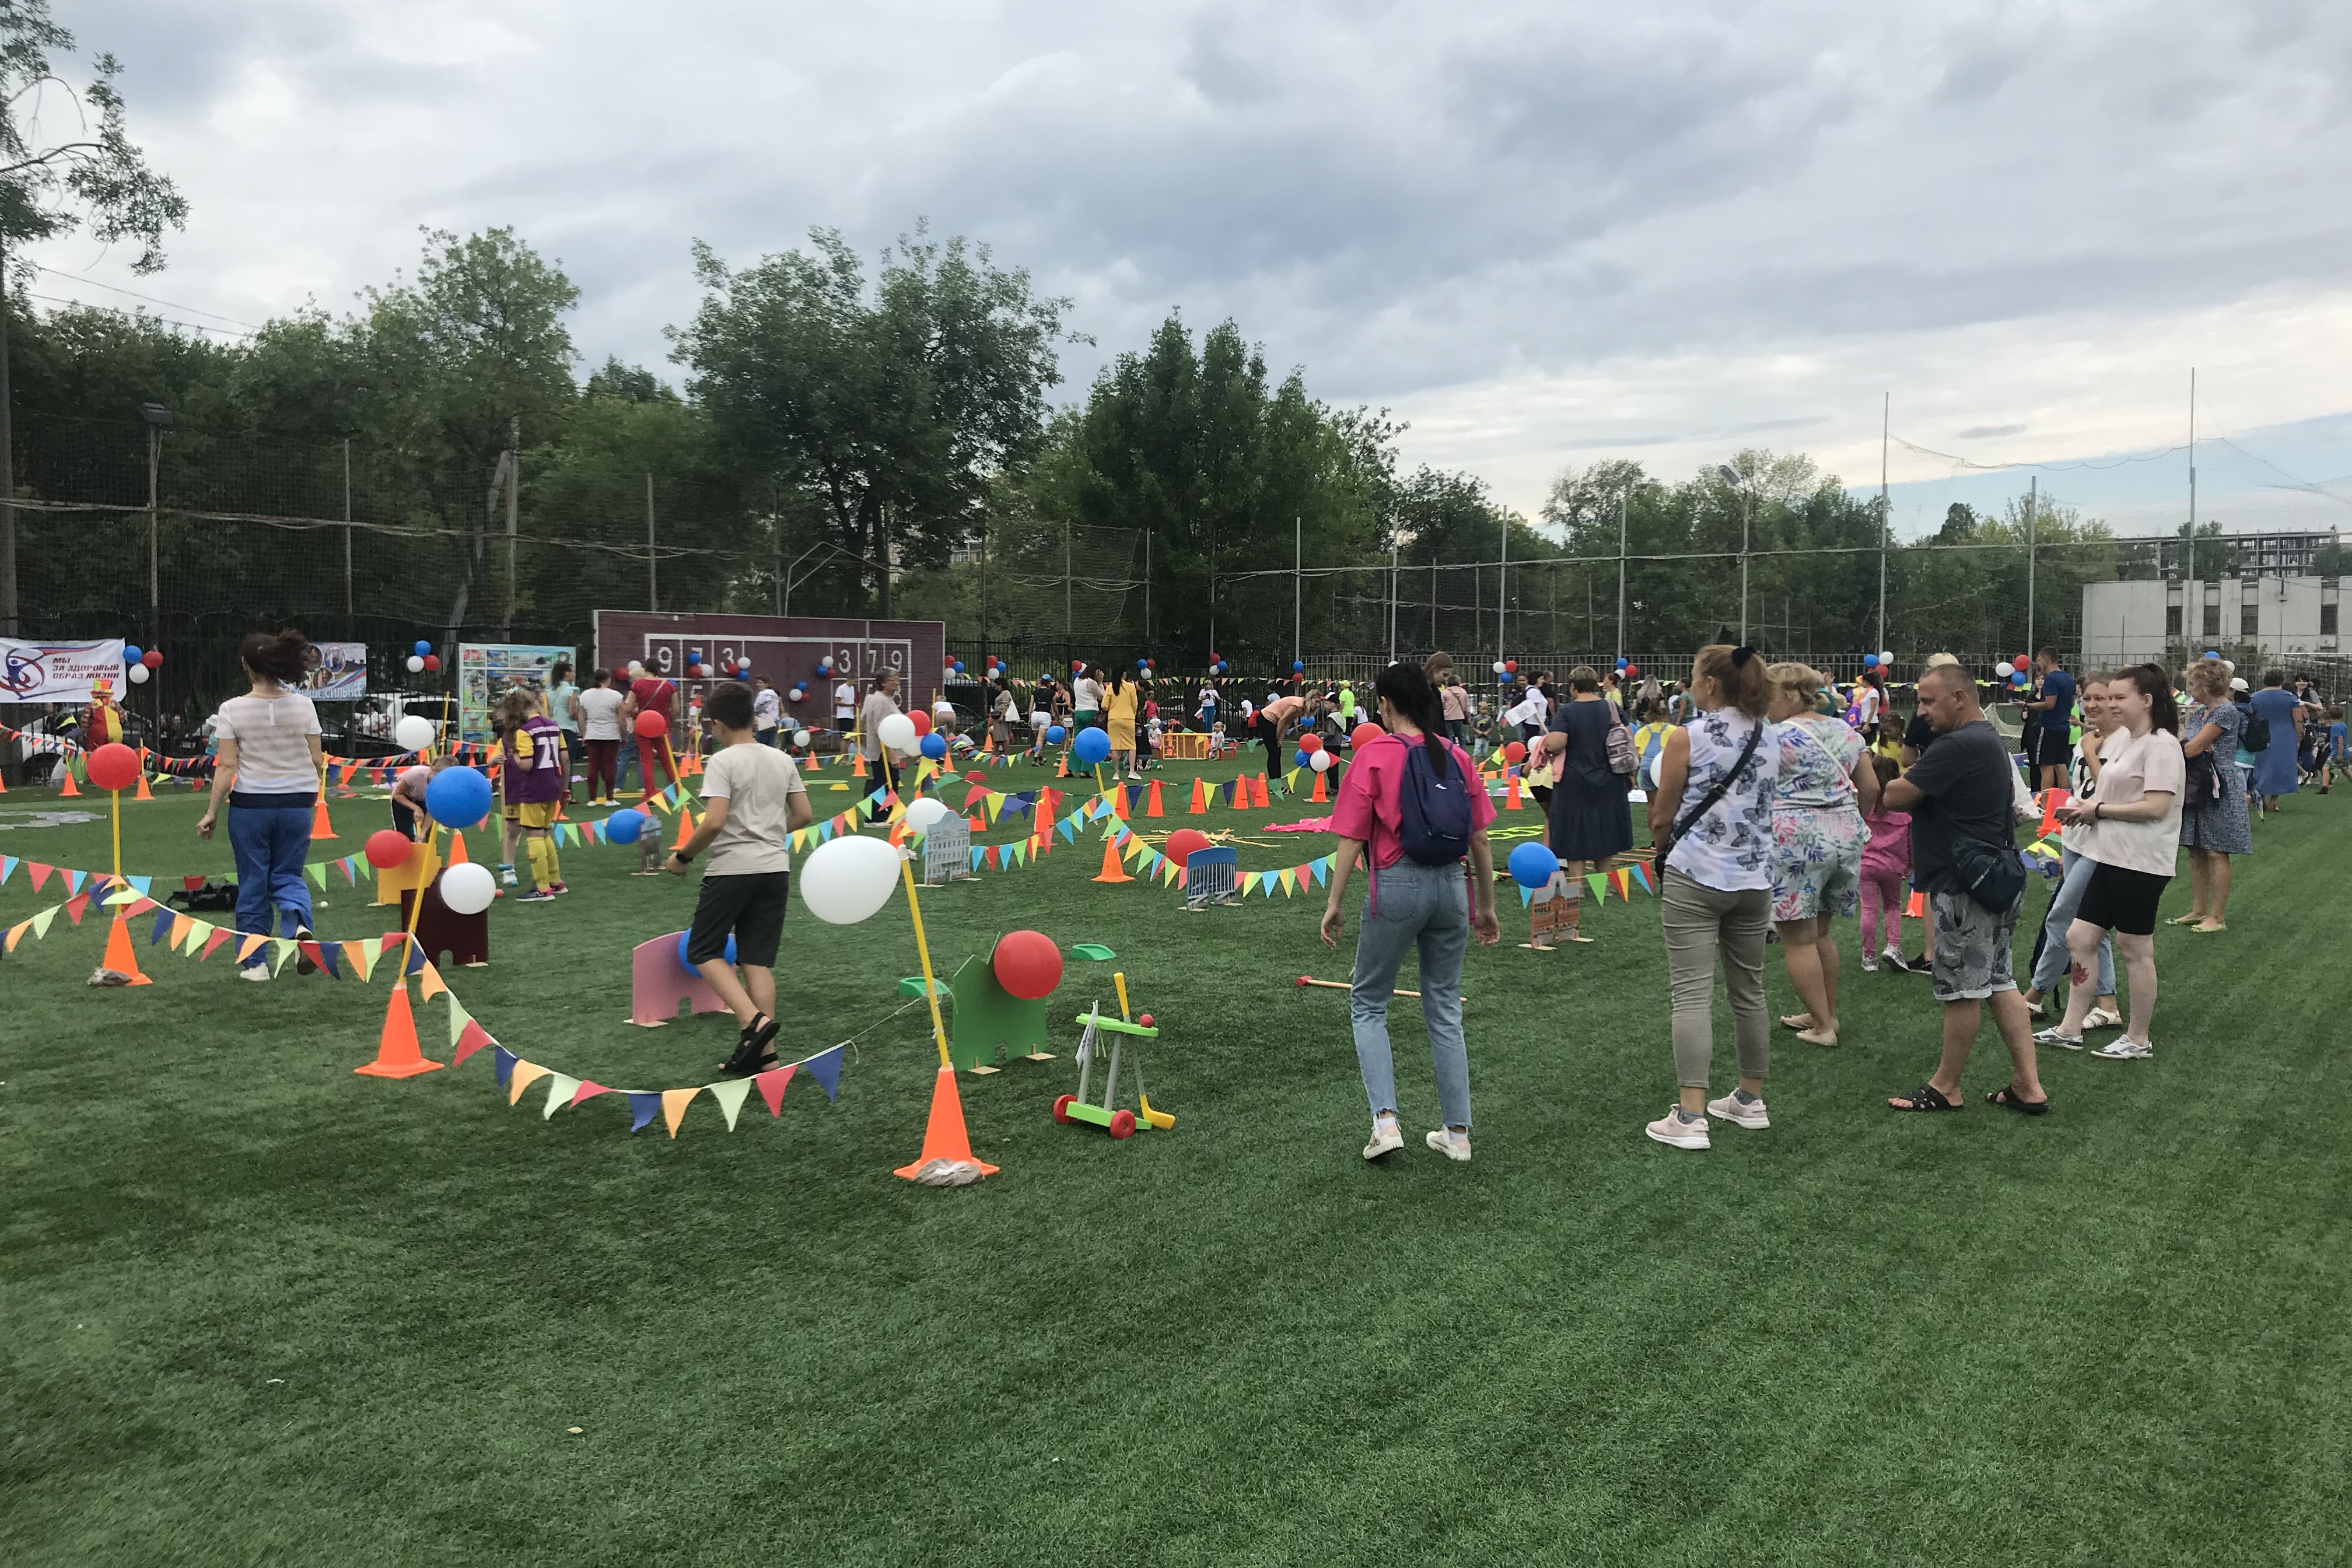 Первокурсники Мининского приняли участие в Фестивале спорта «Автозавод 9:0»